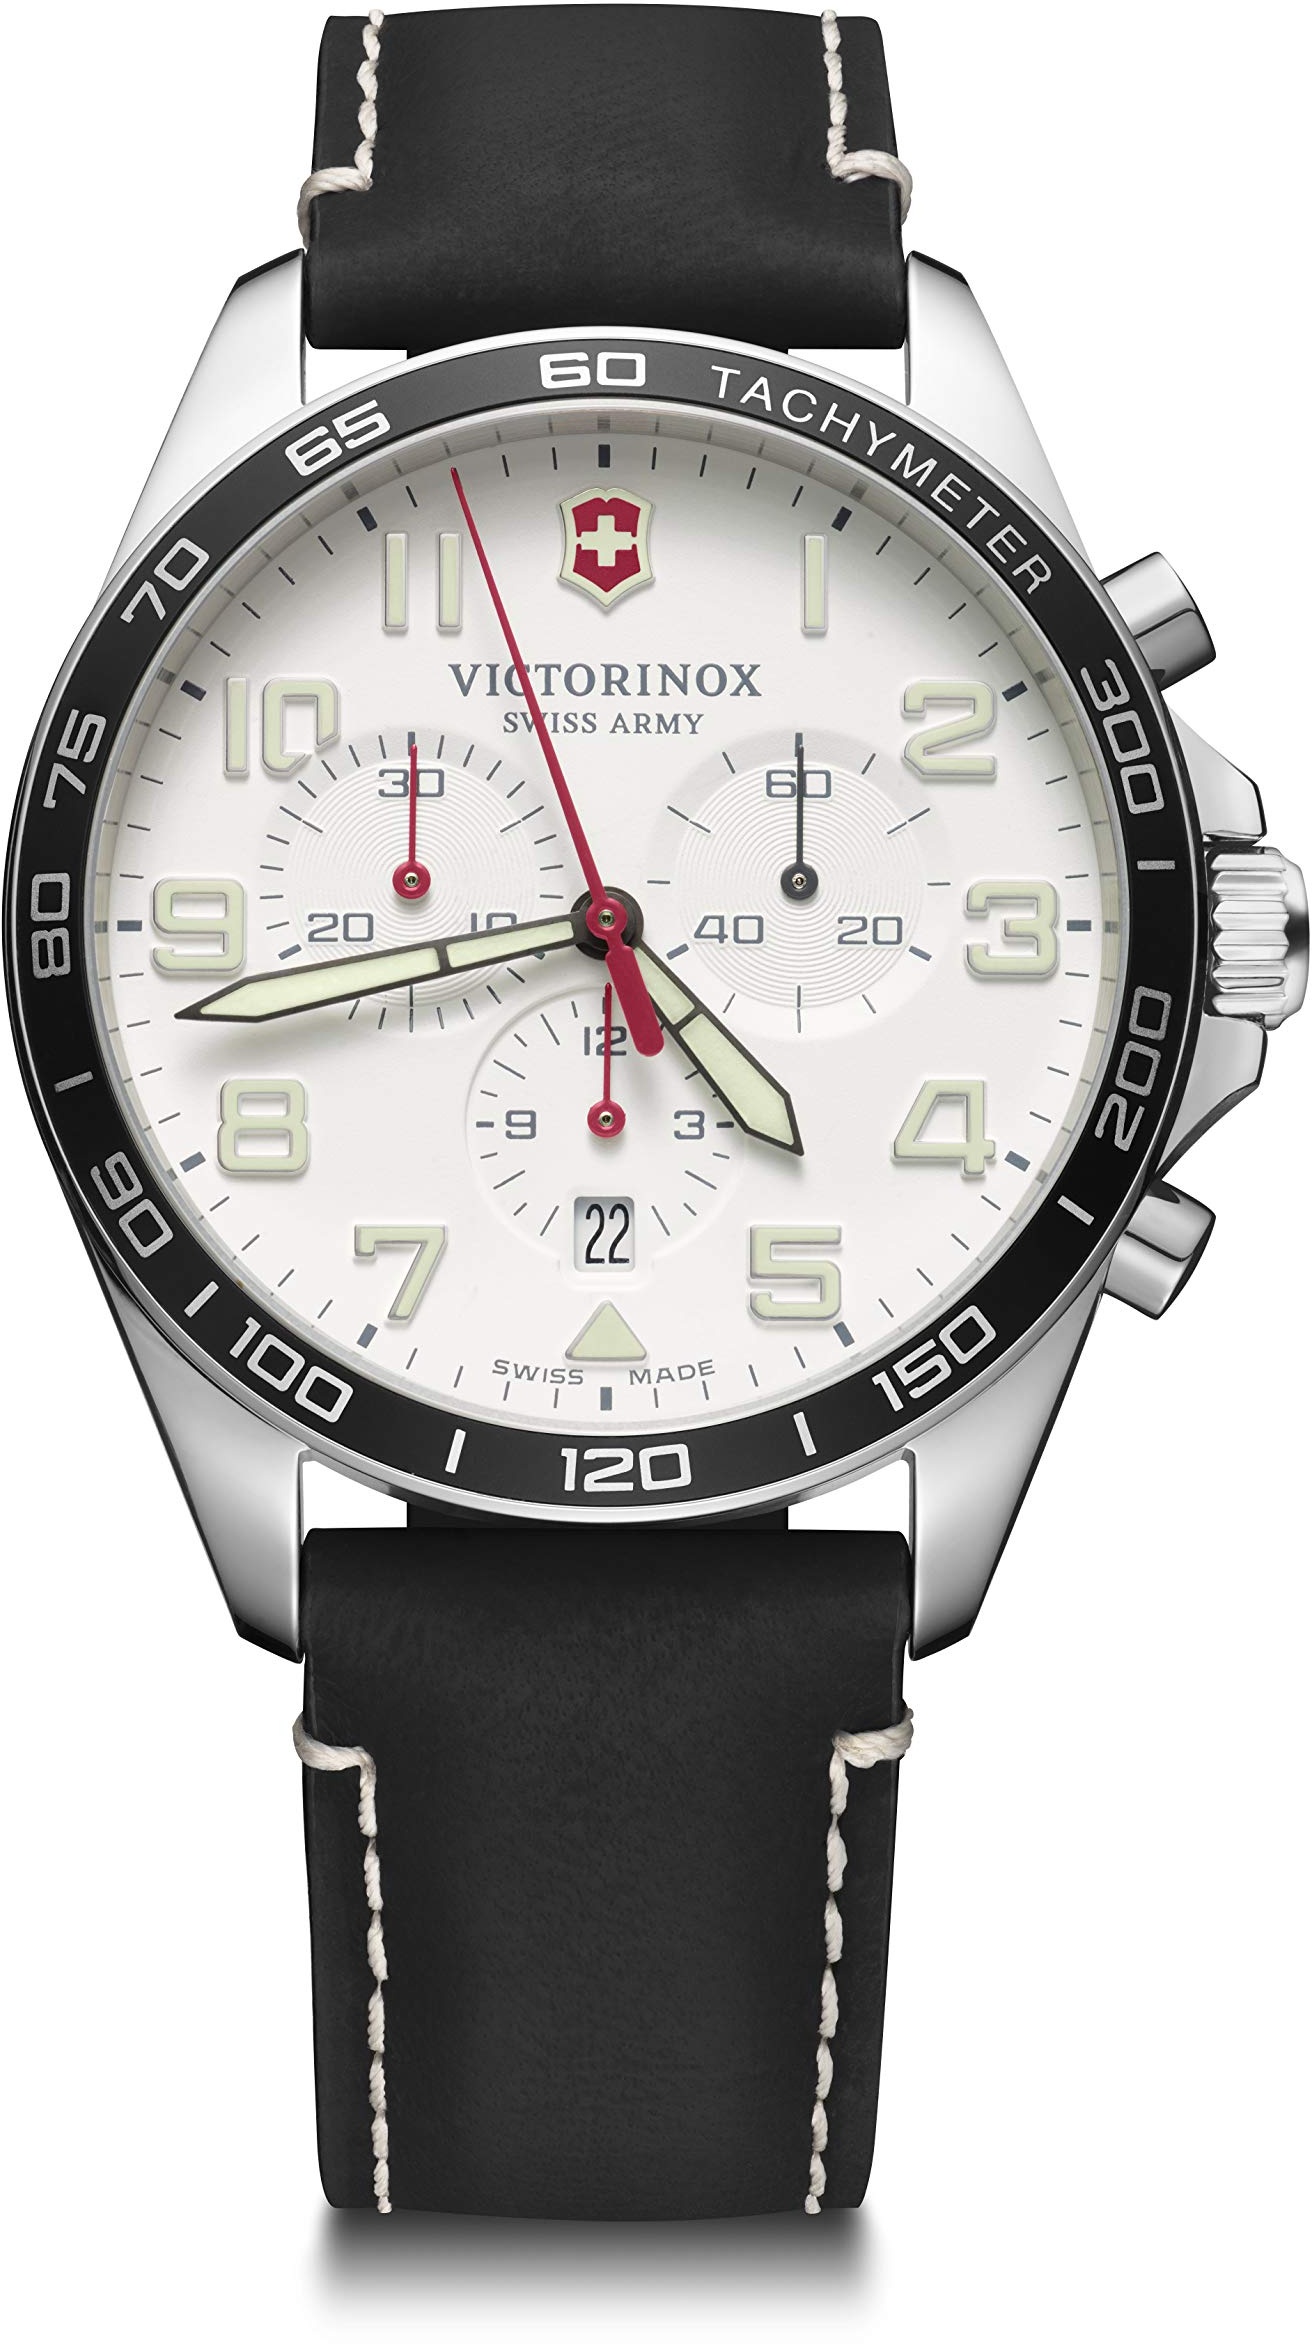 Victorinox Herren-Uhr FieldForce Chrono, Herren-Armbanduhr, analog, Quarz, Wasserdicht bis 100 m, Gehäuse-Ø 42 mm, Armband 21 mm, 82 g, Schwarz/Weiß